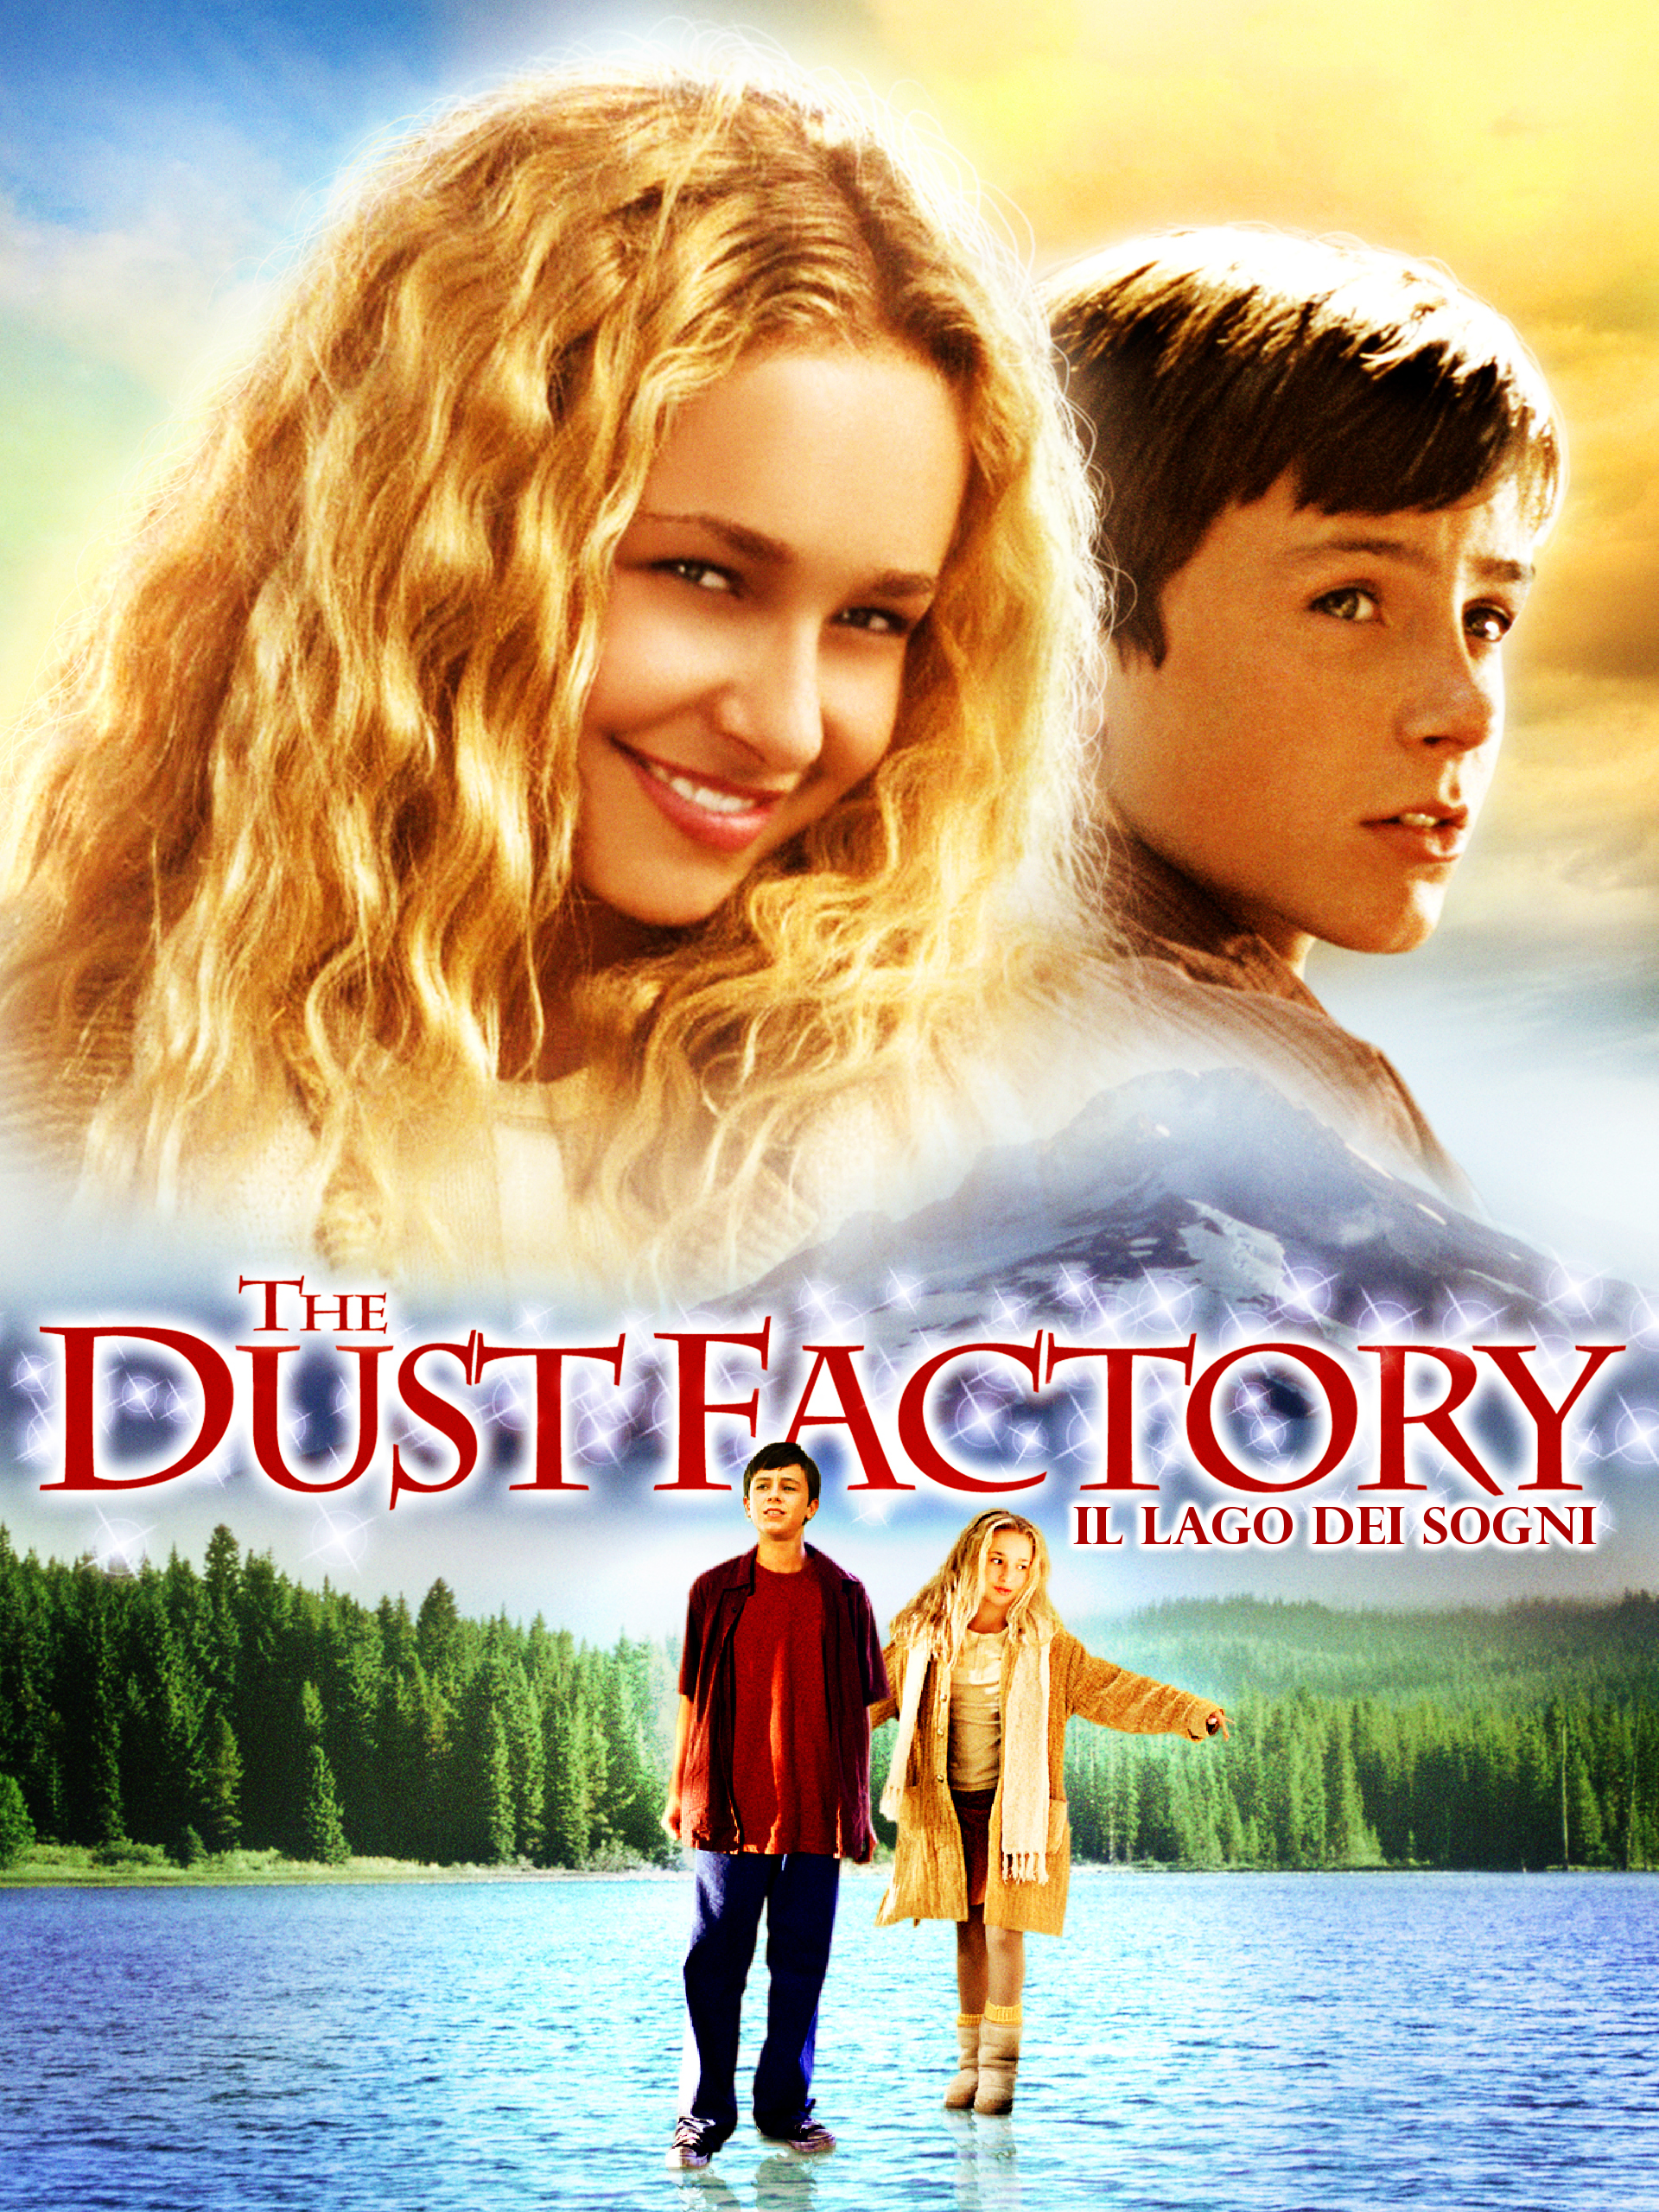 Il lago dei sogni – The dust factory (2004)